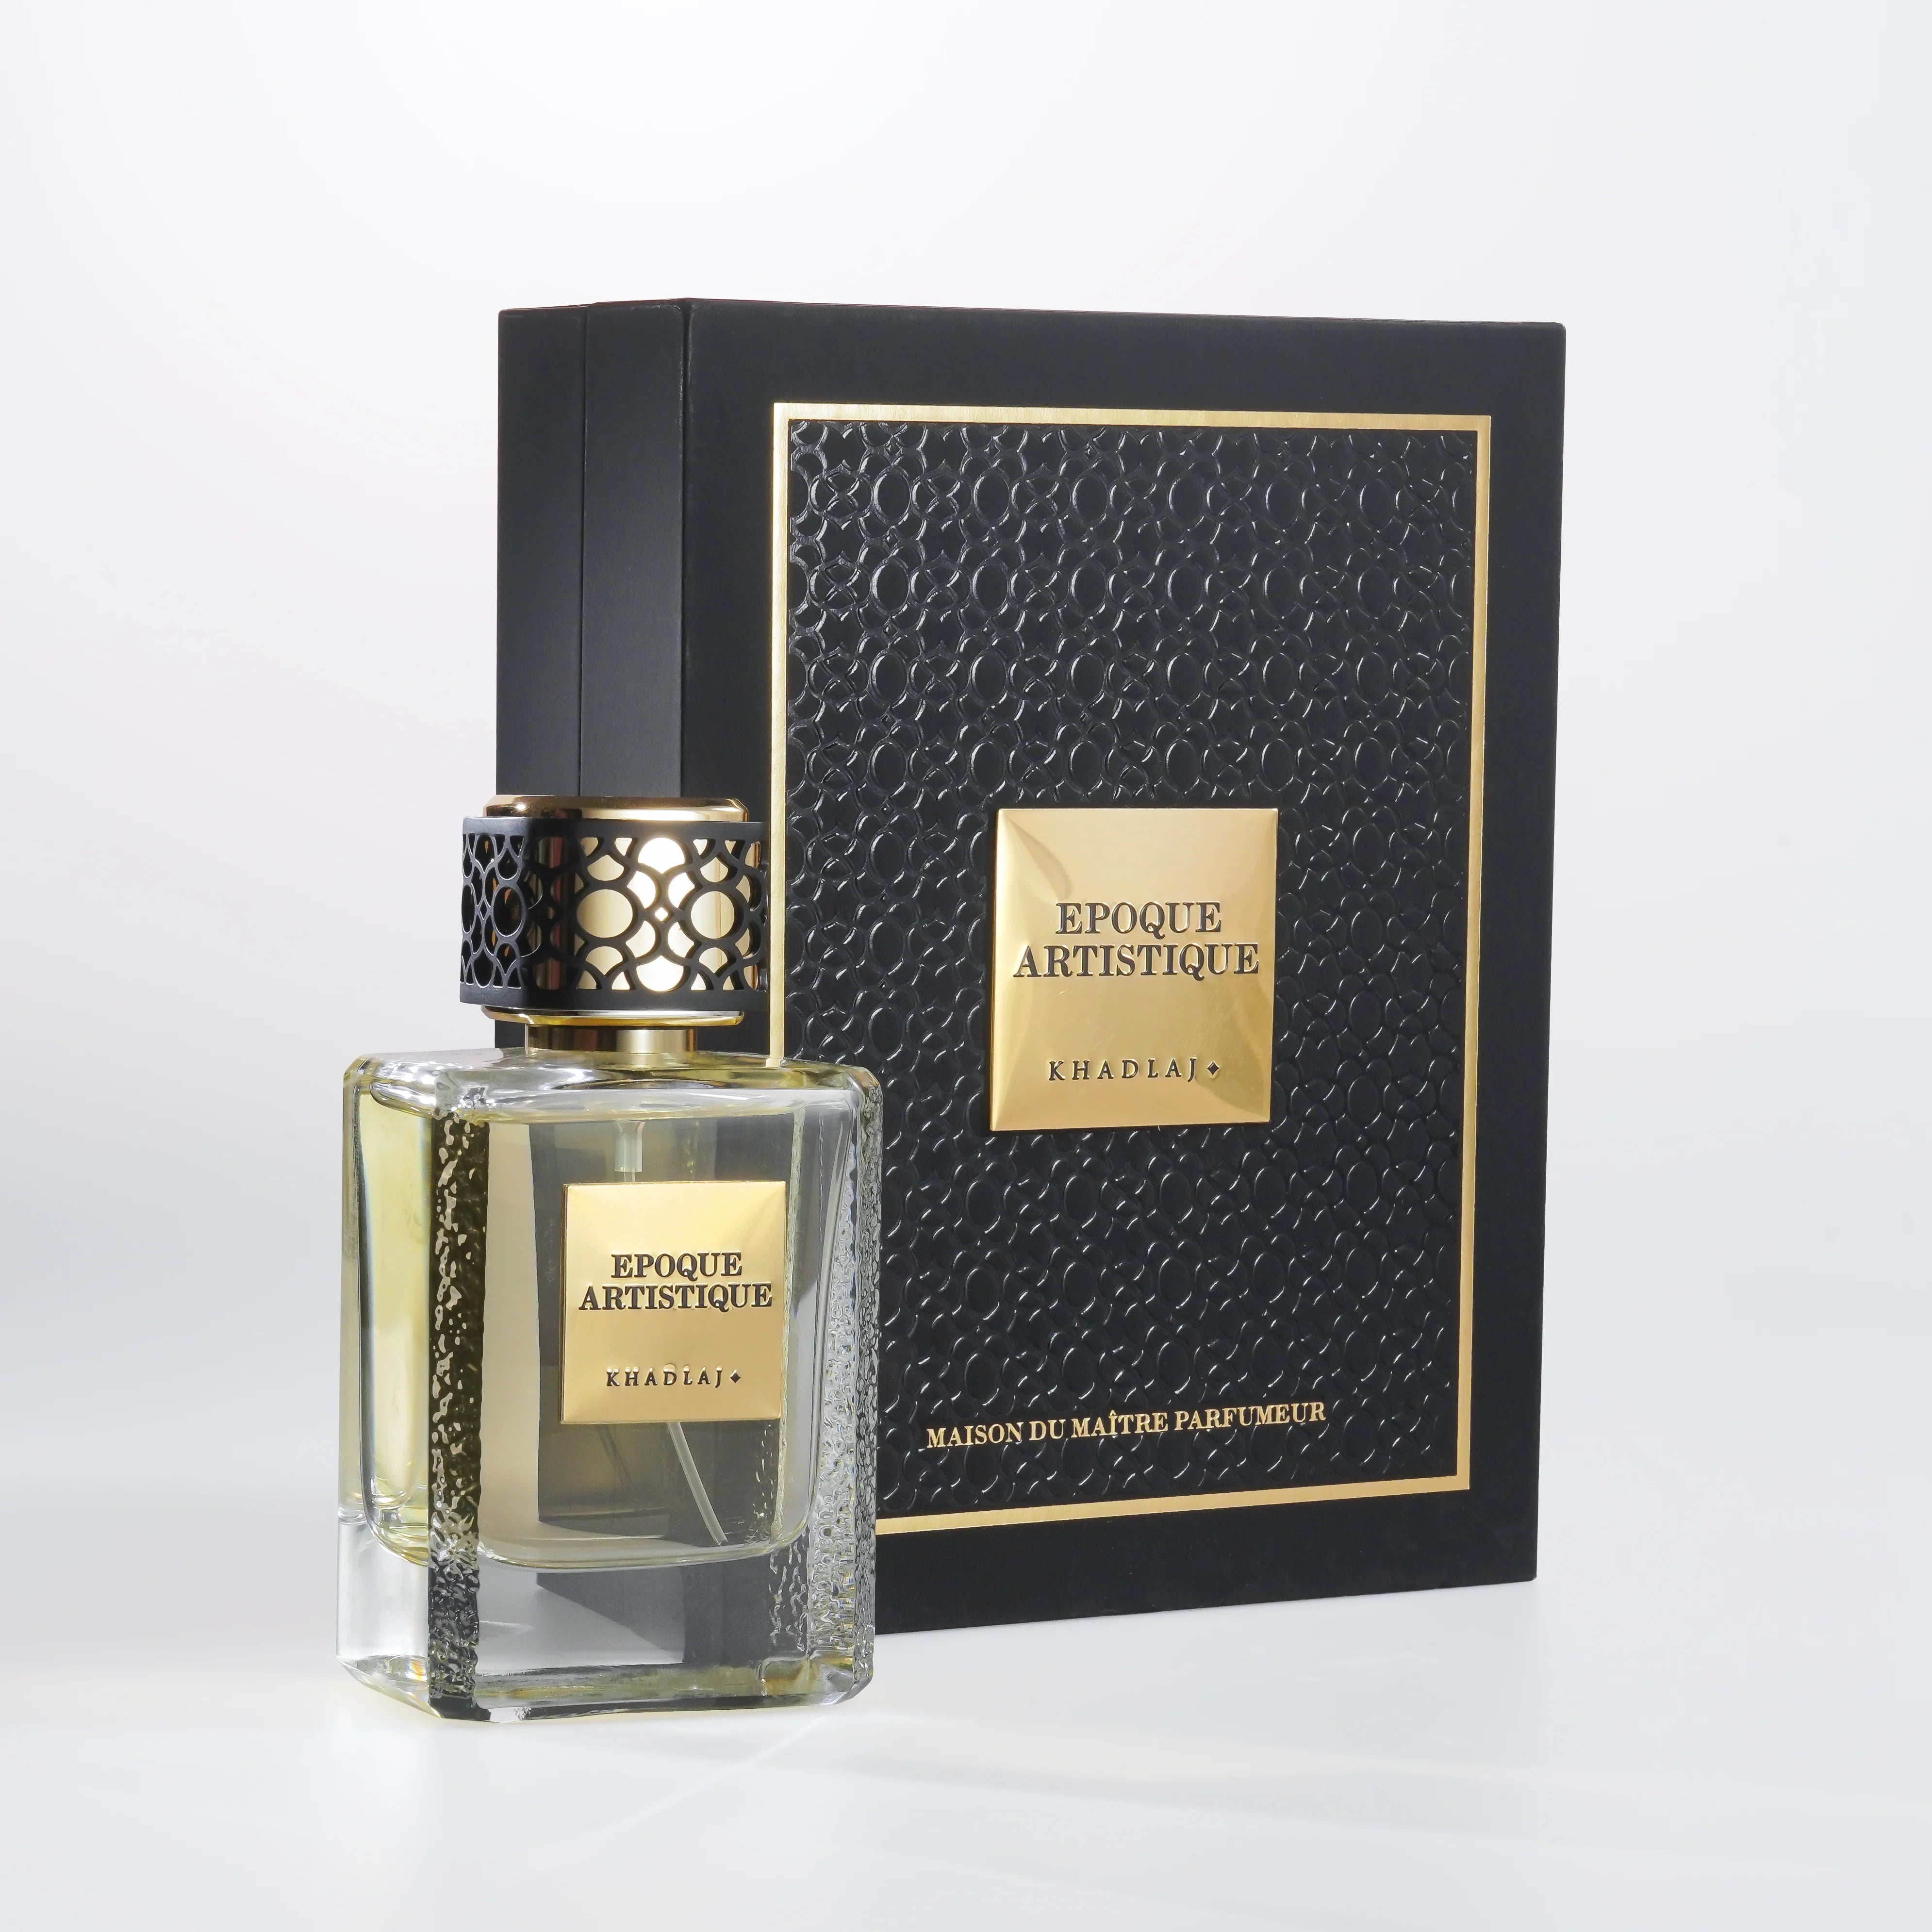 Epoque Artistique EDP (100ml) spray perfume by Khadlaj | Khan El Khalili